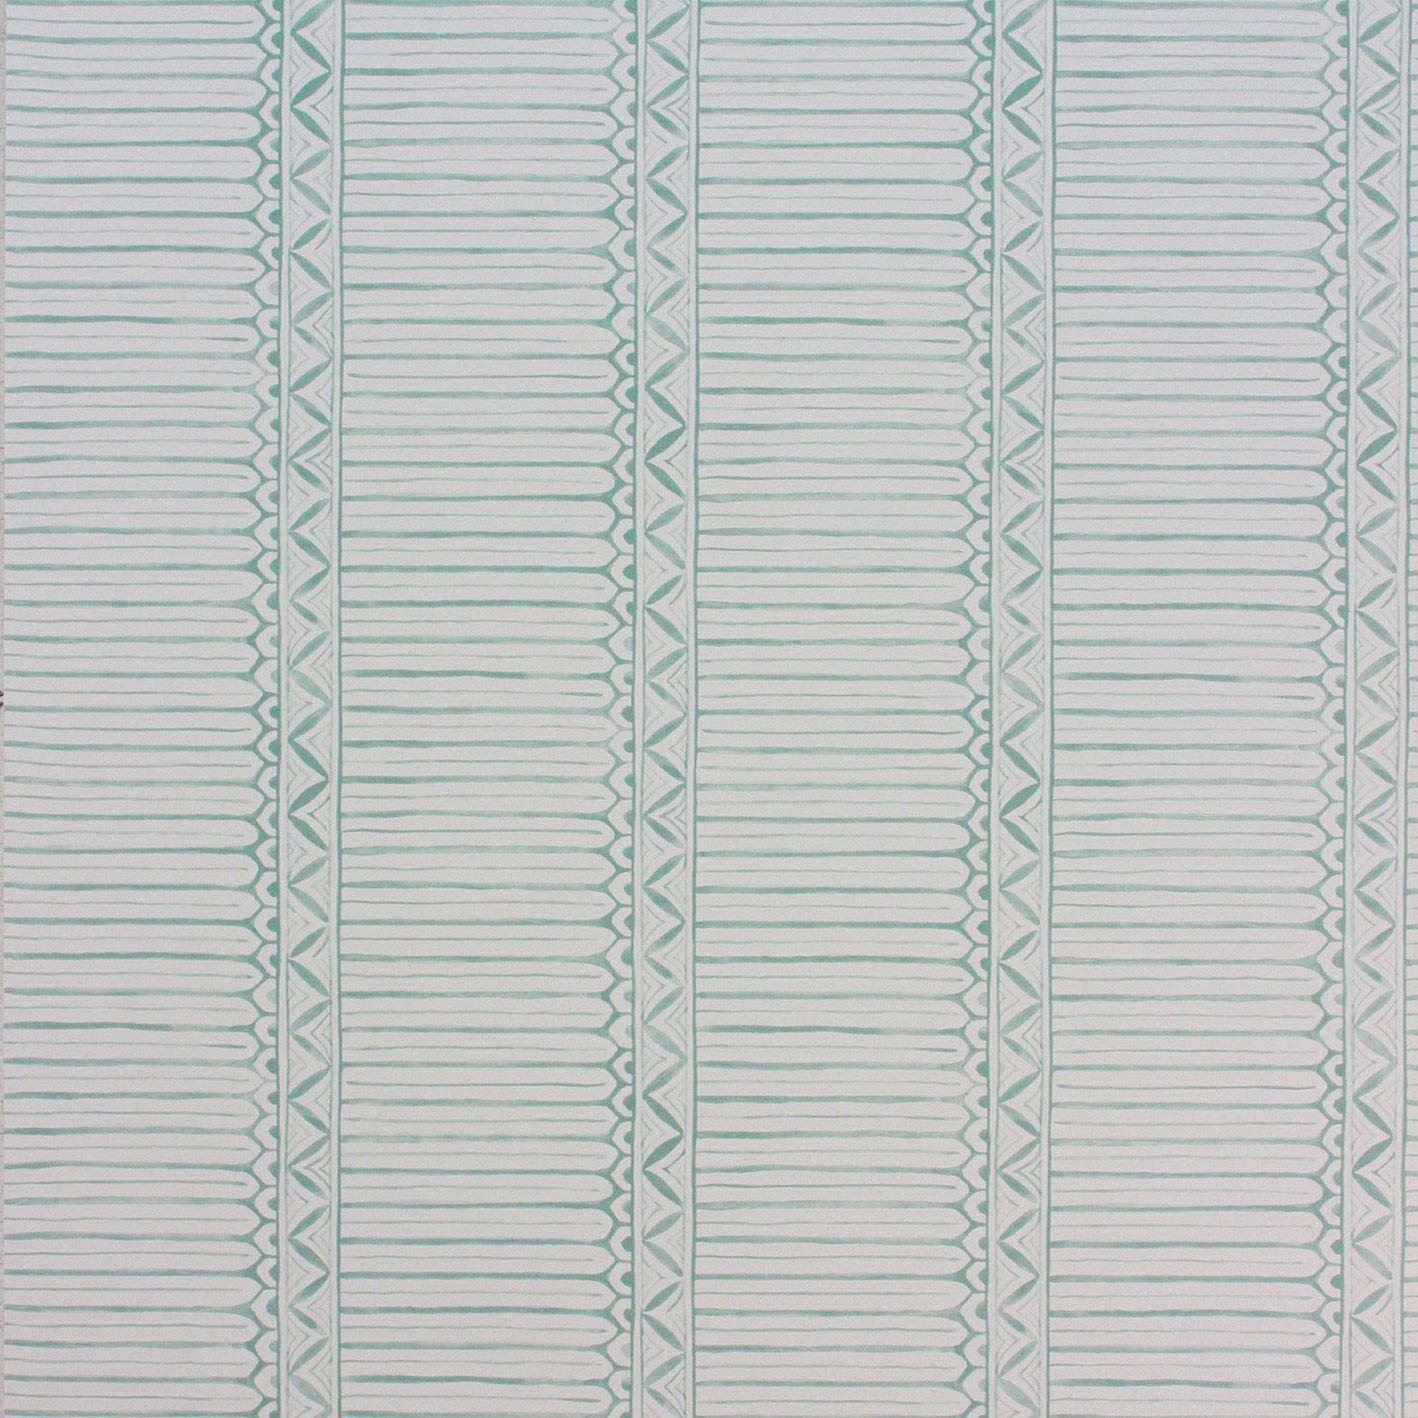 Nina Campbell Wallpaper - Les Rêves Domiers Aqua/Ivory NCW4307-03